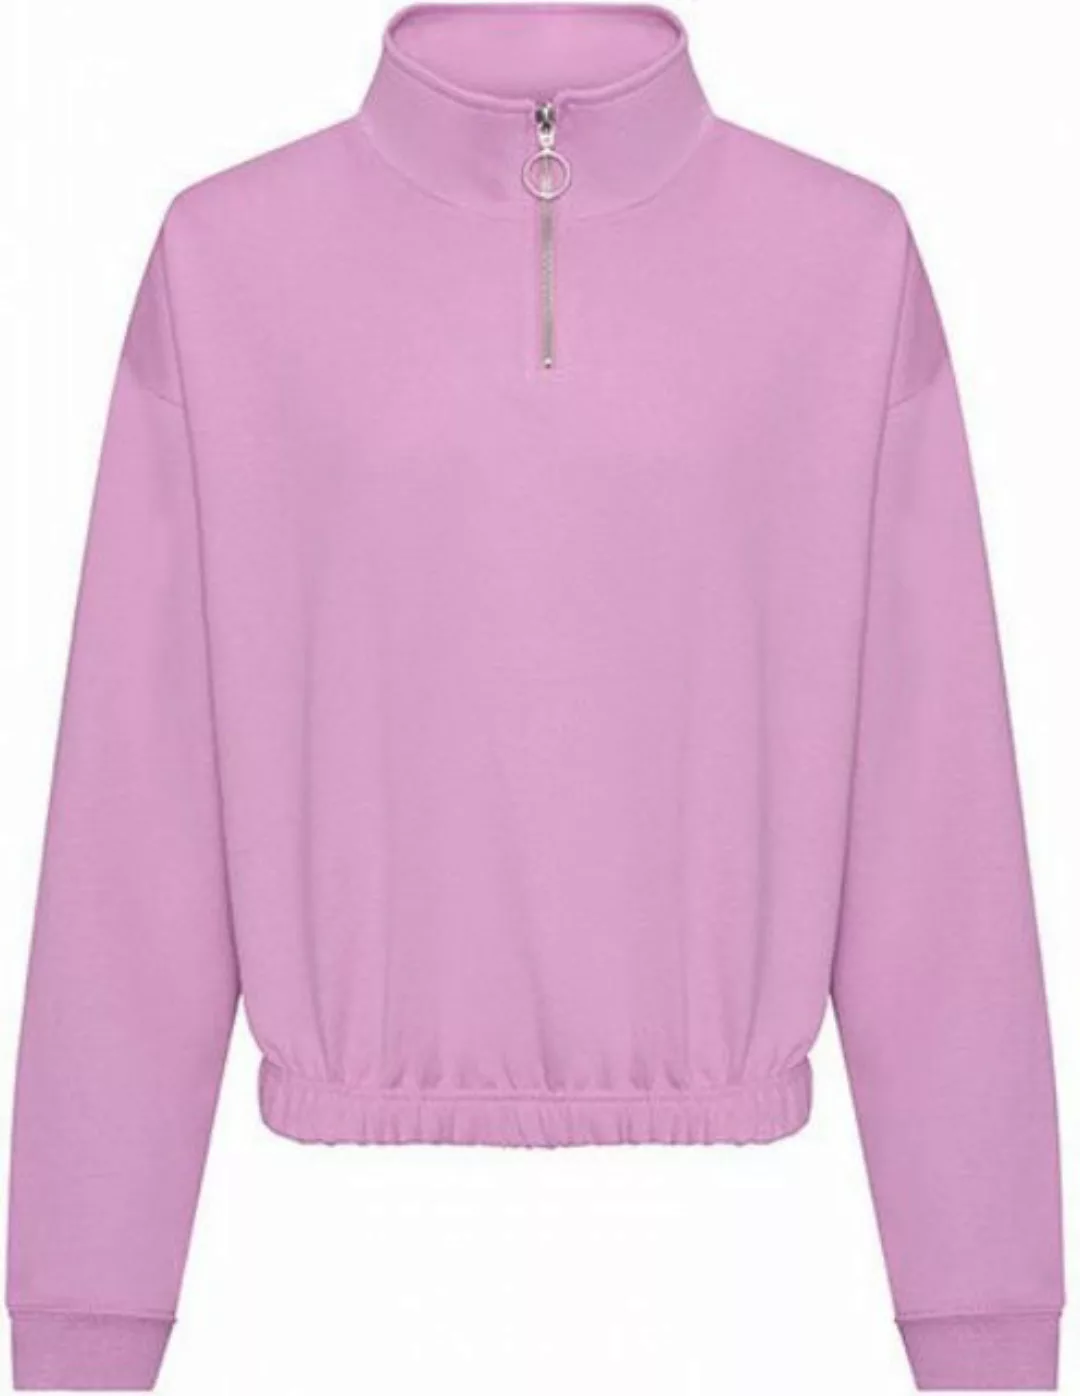 Just Hoods Sweatshirt Women´s Cropped 1/4 Zip Damen Sweatshirt günstig online kaufen